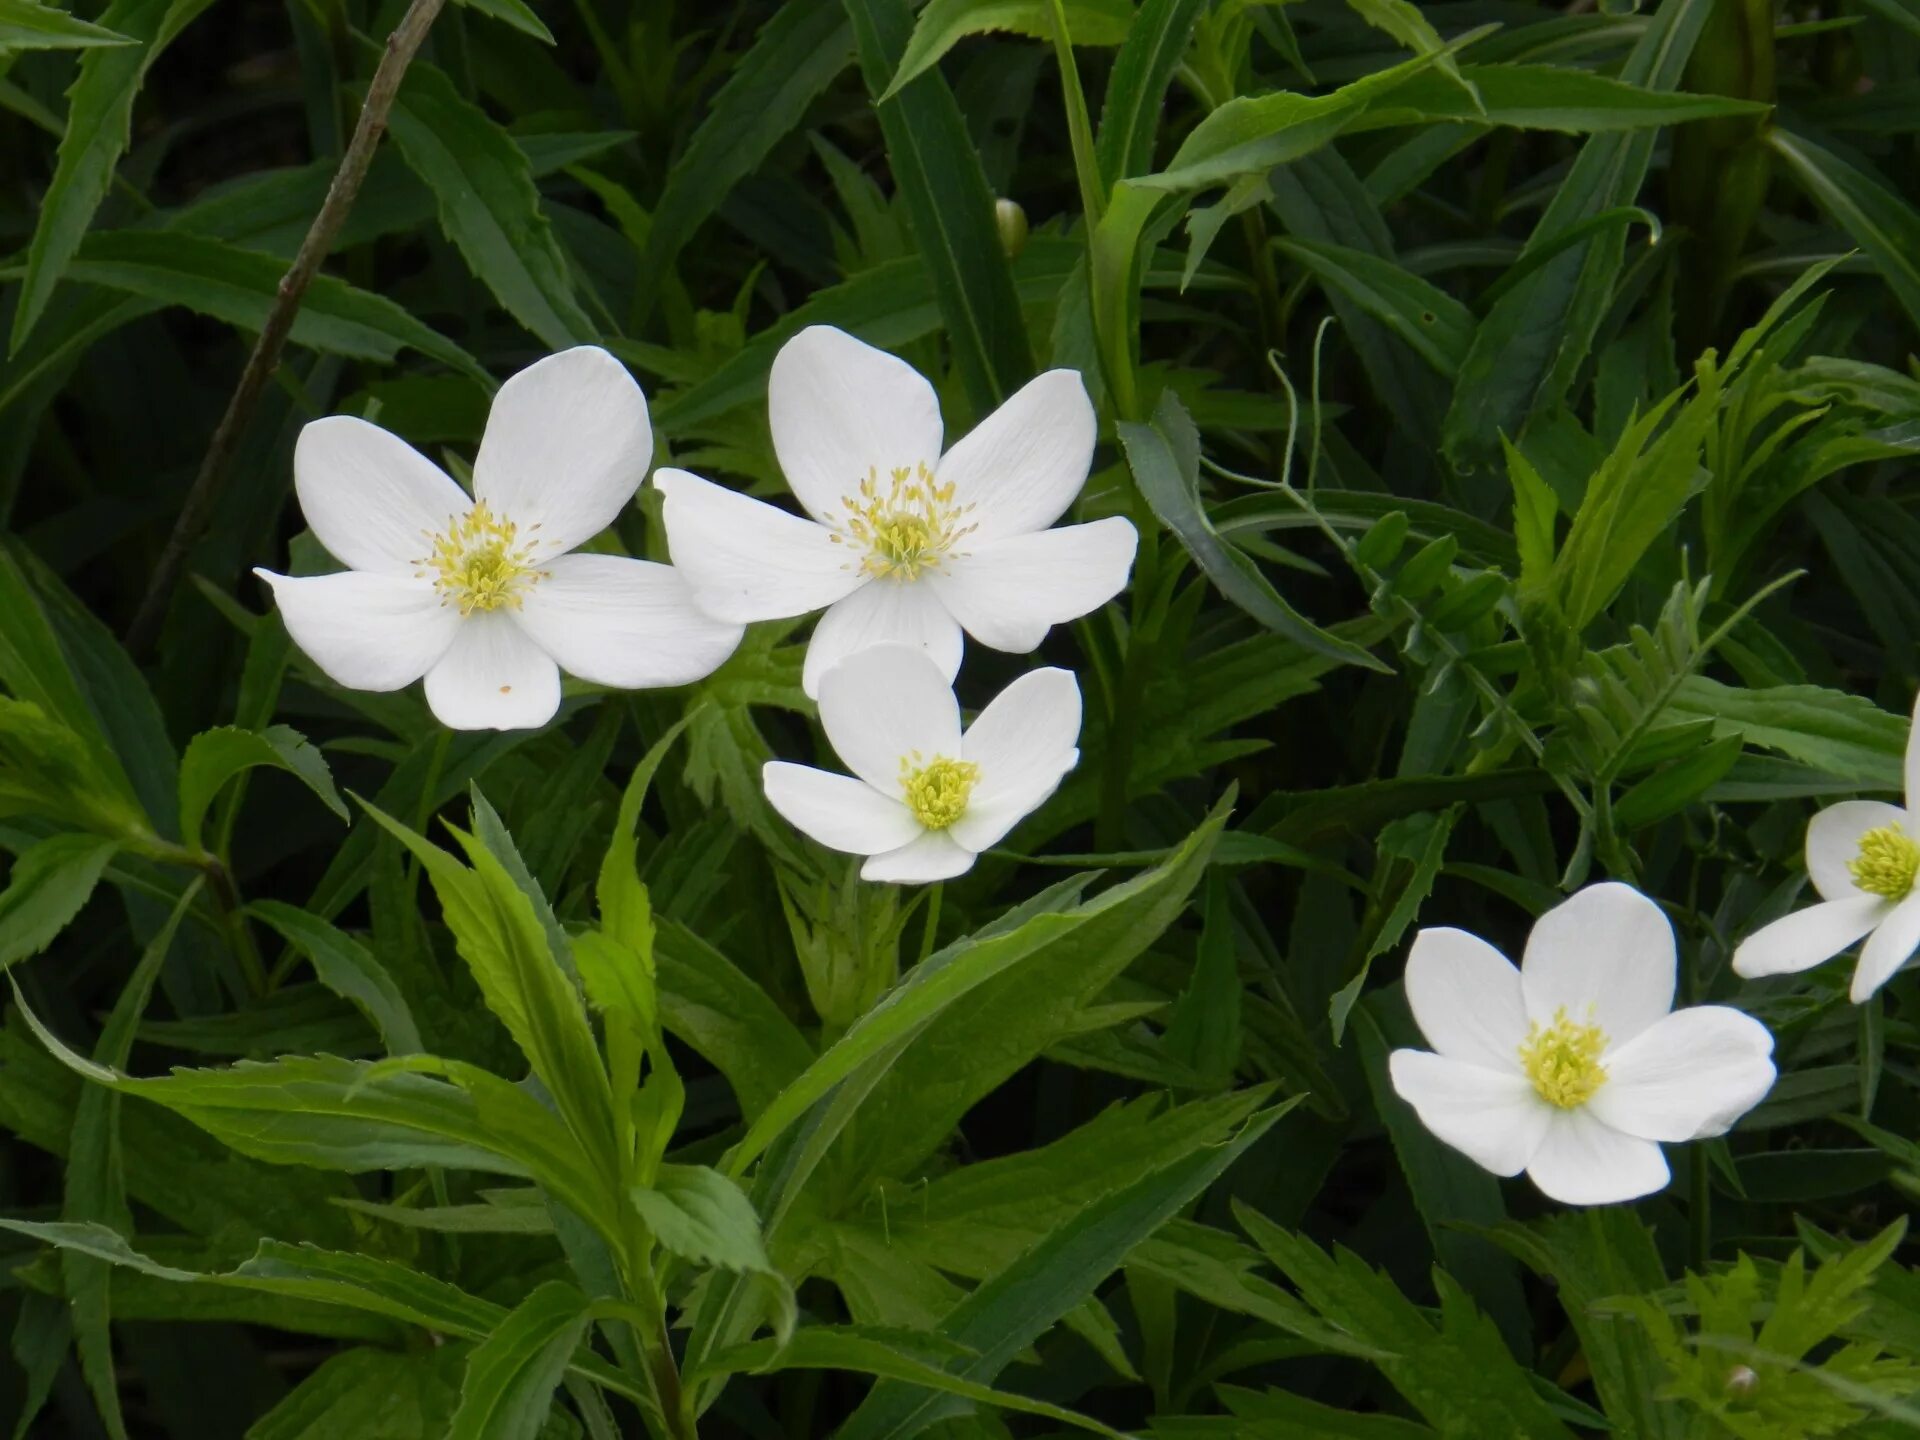 Название цветов мелкие белого цвета. Мелкие белые садовые цветы. Маленькие белые цветы. Белые цветочки низкие. Маленький Беленький садовый цветок.